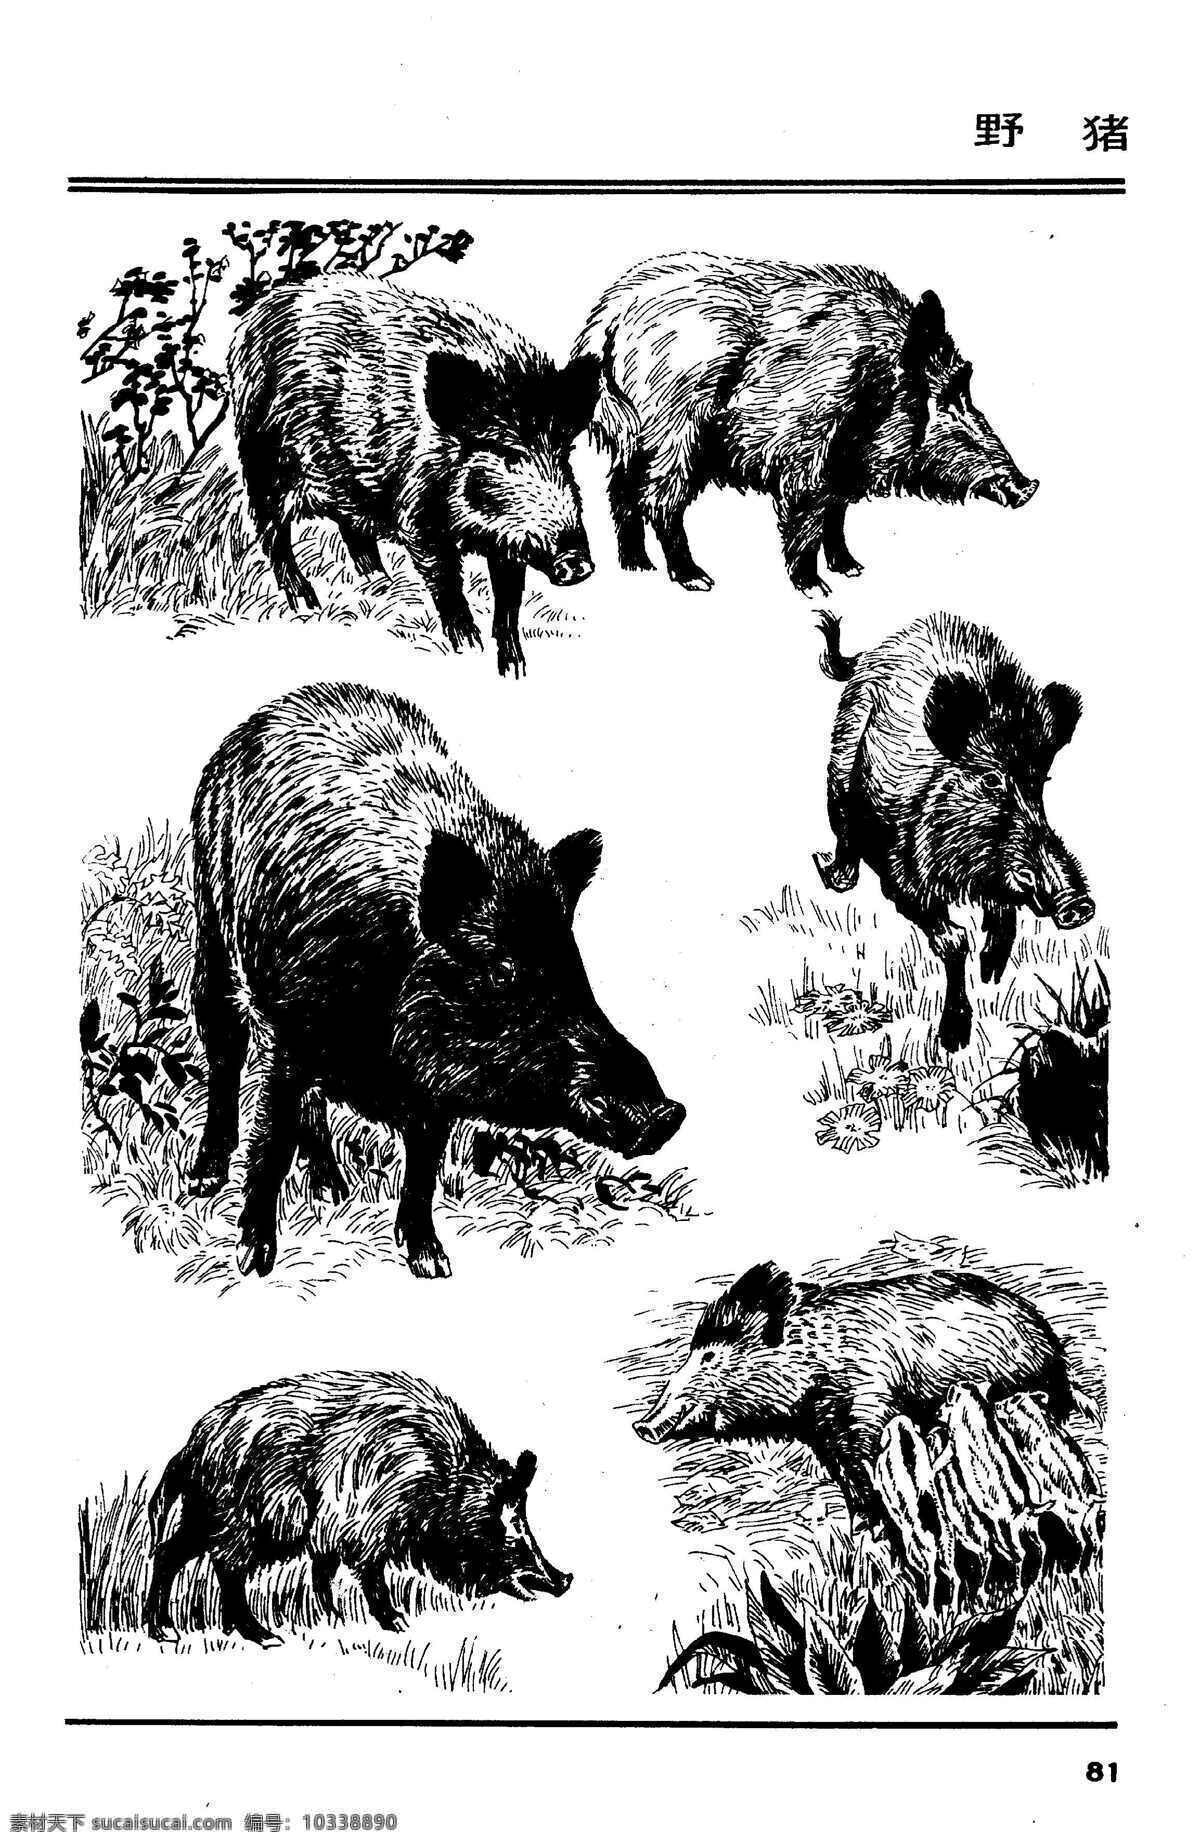 画兽谱85 野猪 百兽 兽 家禽 猛兽 动物 白描 线描 绘画 美术 禽兽 野生动物 百兽图 画兽谱 猪 pig 生物世界 设计图库